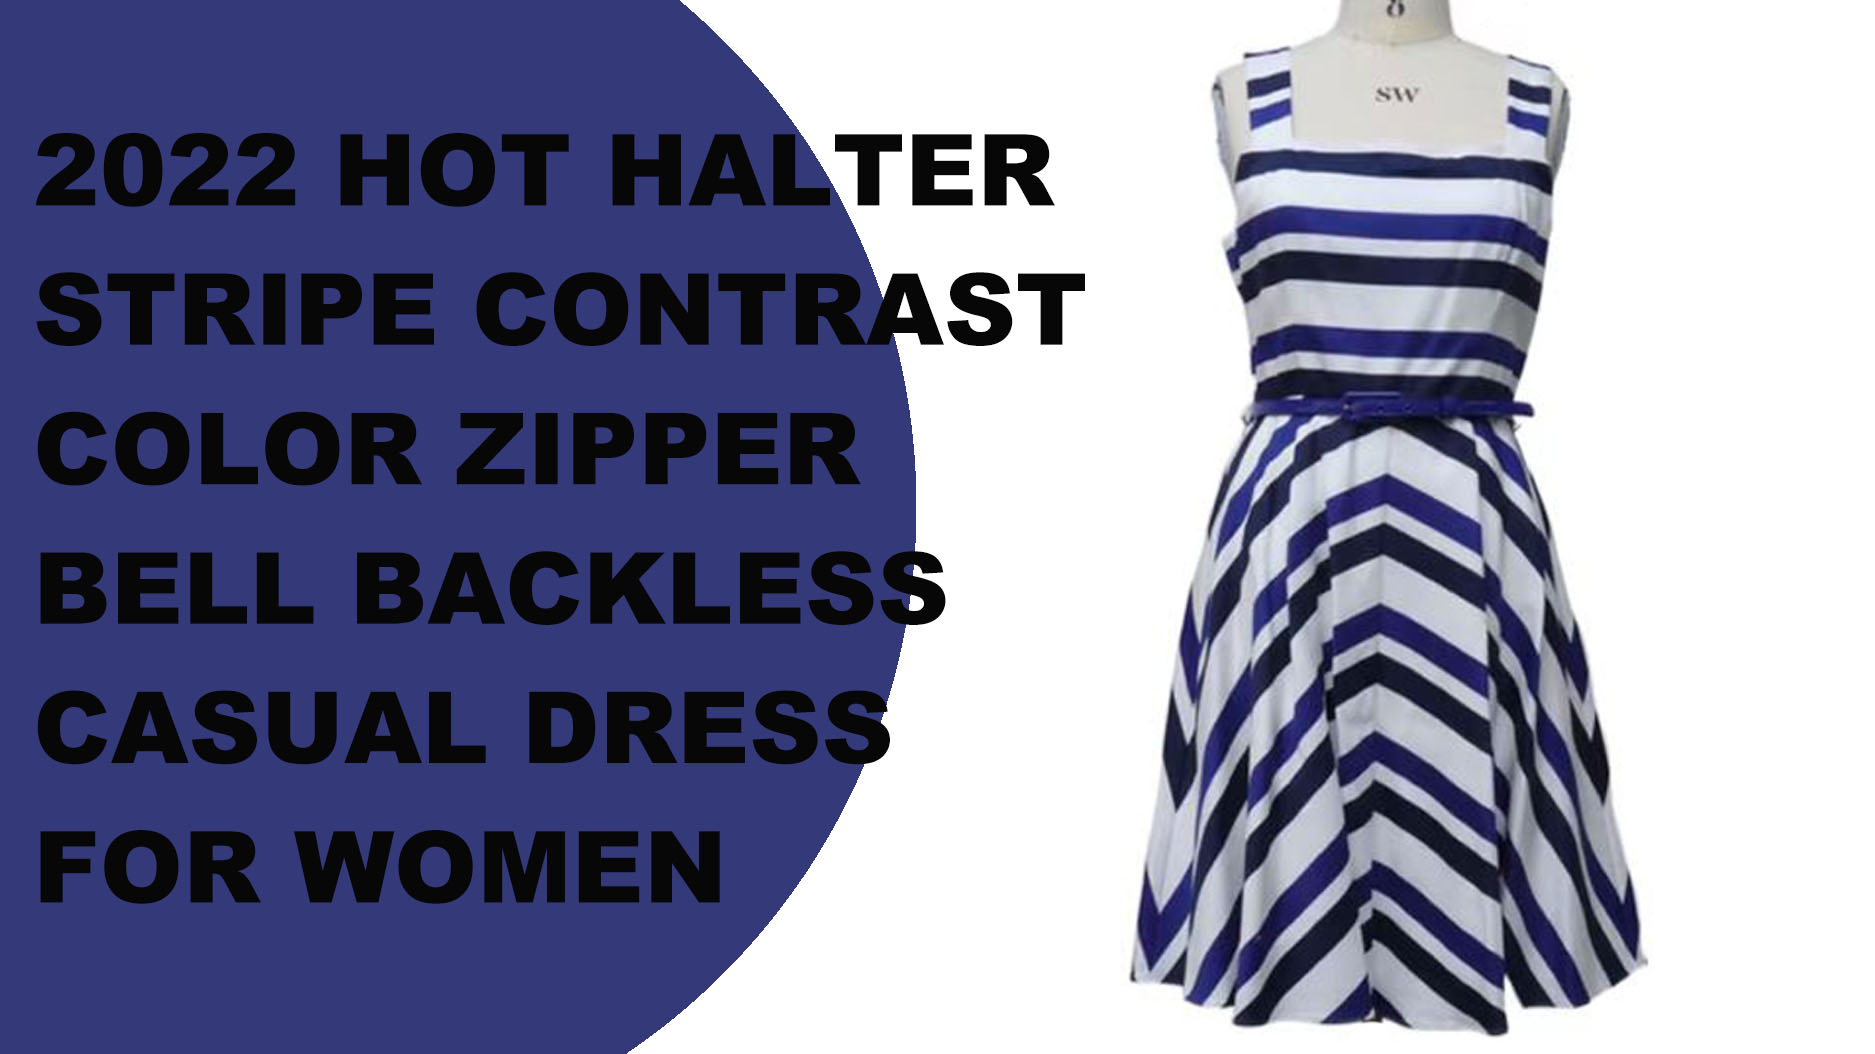 2022 महिलाओं के लिए हॉट हॉल्टर स्ट्राइप कंट्रास्ट कलर ज़िपर बेल बैकलेस कैज़ुअल ड्रेस